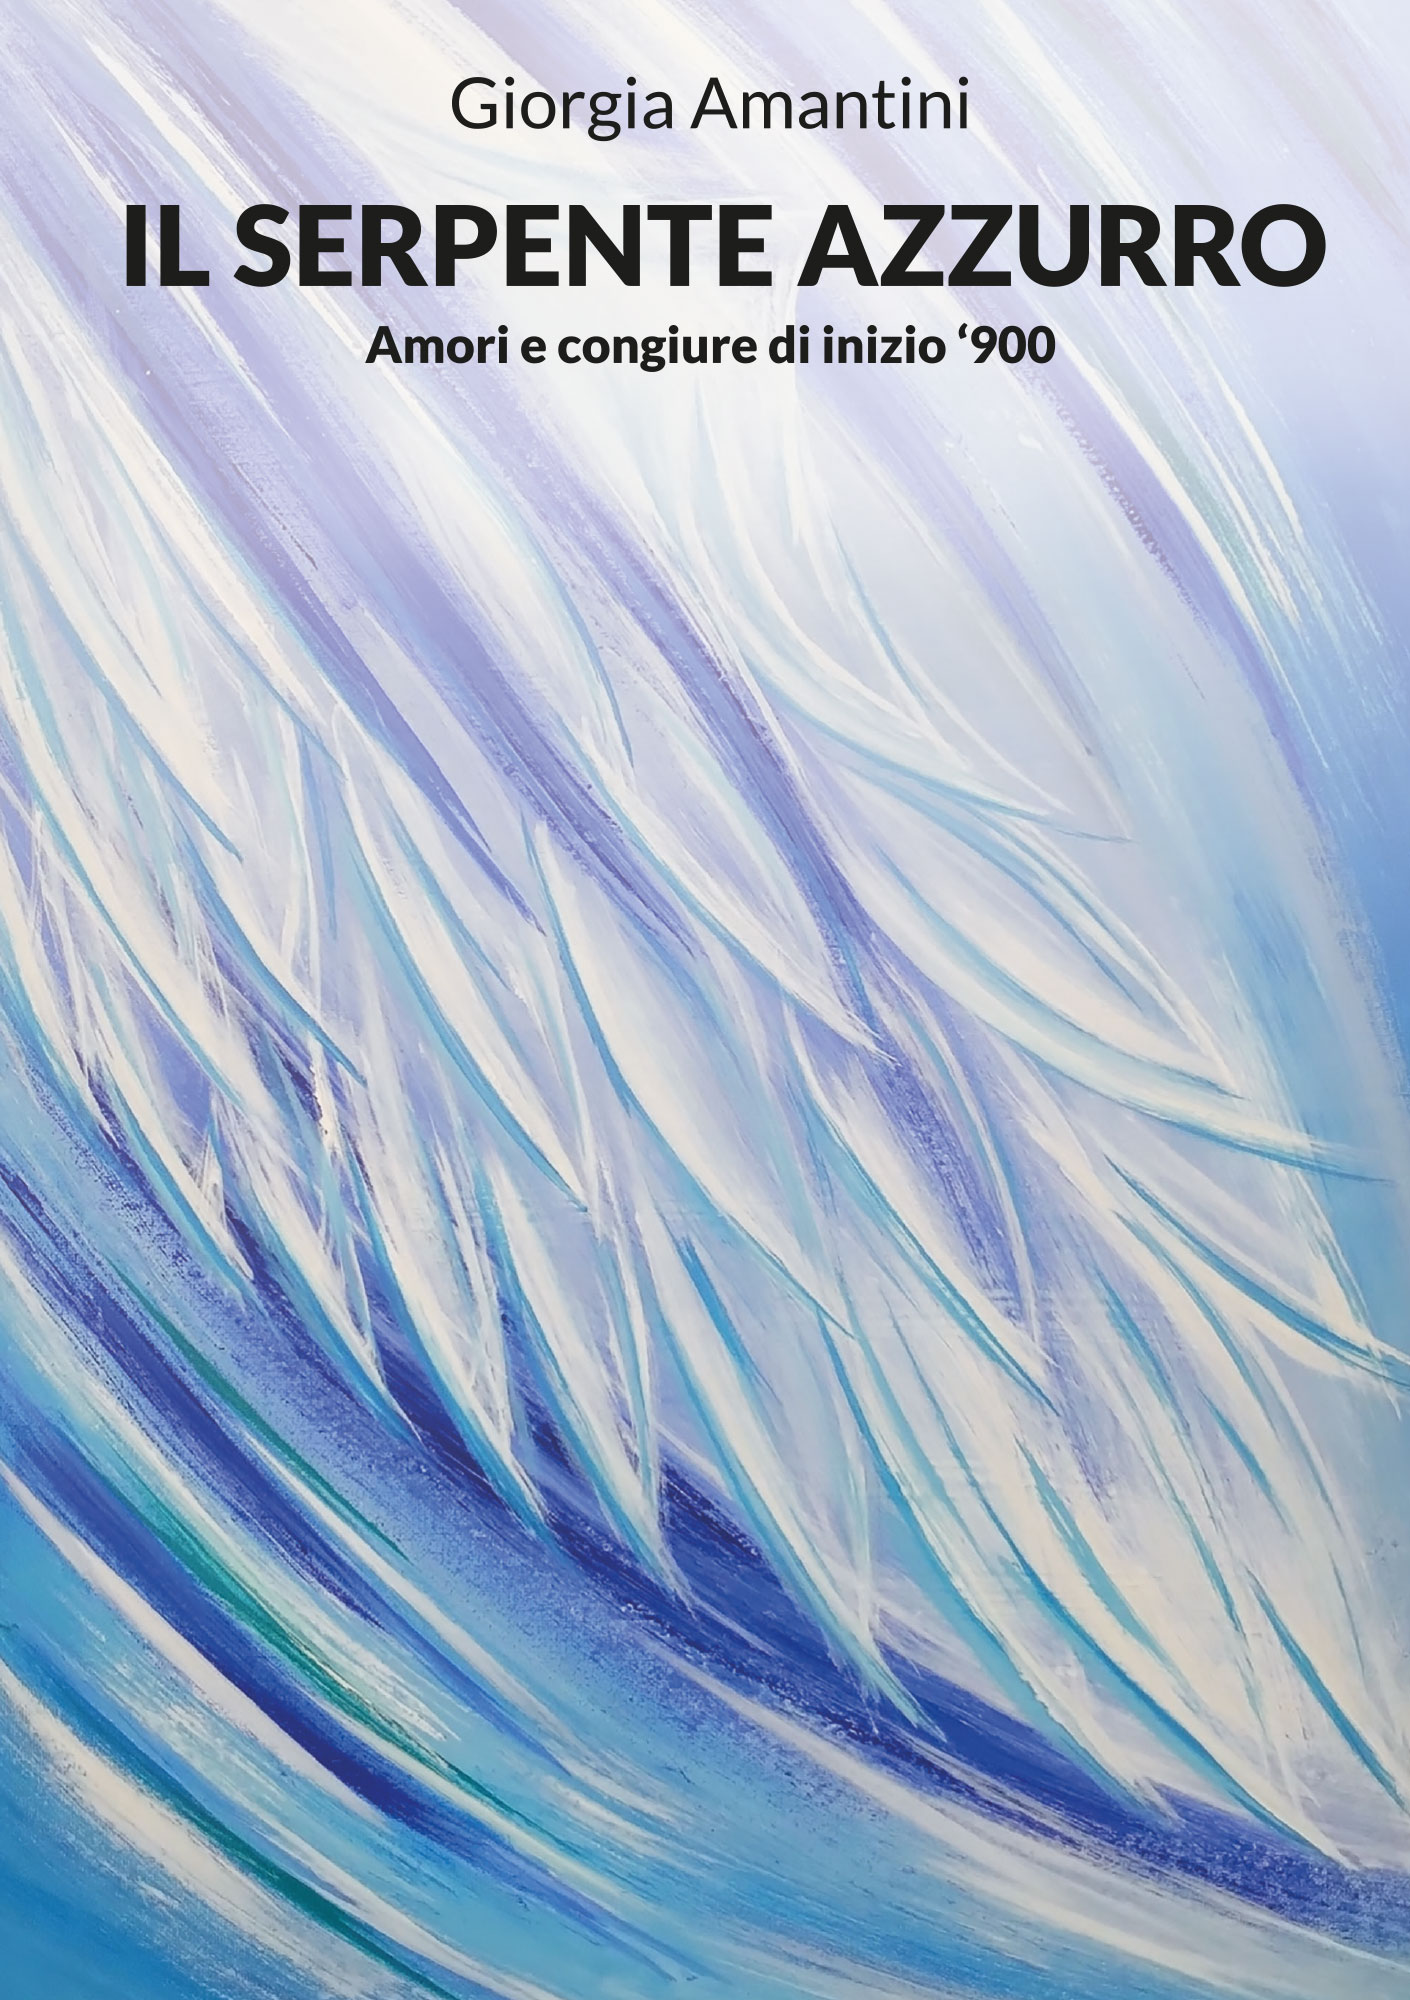 Libri Giorgia Amantini - Il Serpente Azzurro - Amori E Congiure Di Inizio '900 NUOVO SIGILLATO, EDIZIONE DEL 24/09/2022 SUBITO DISPONIBILE